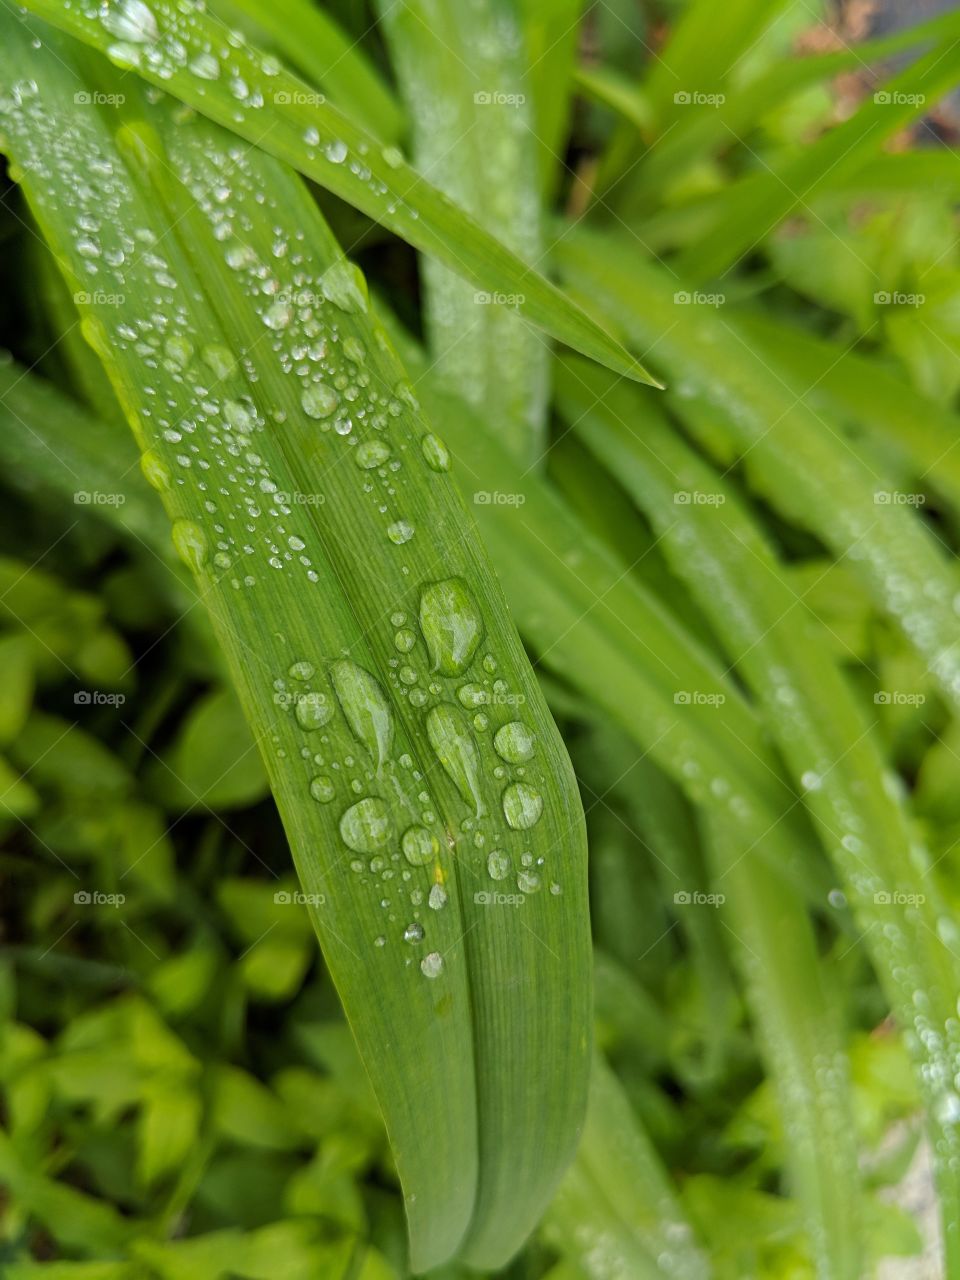 Rain drop on a leaf